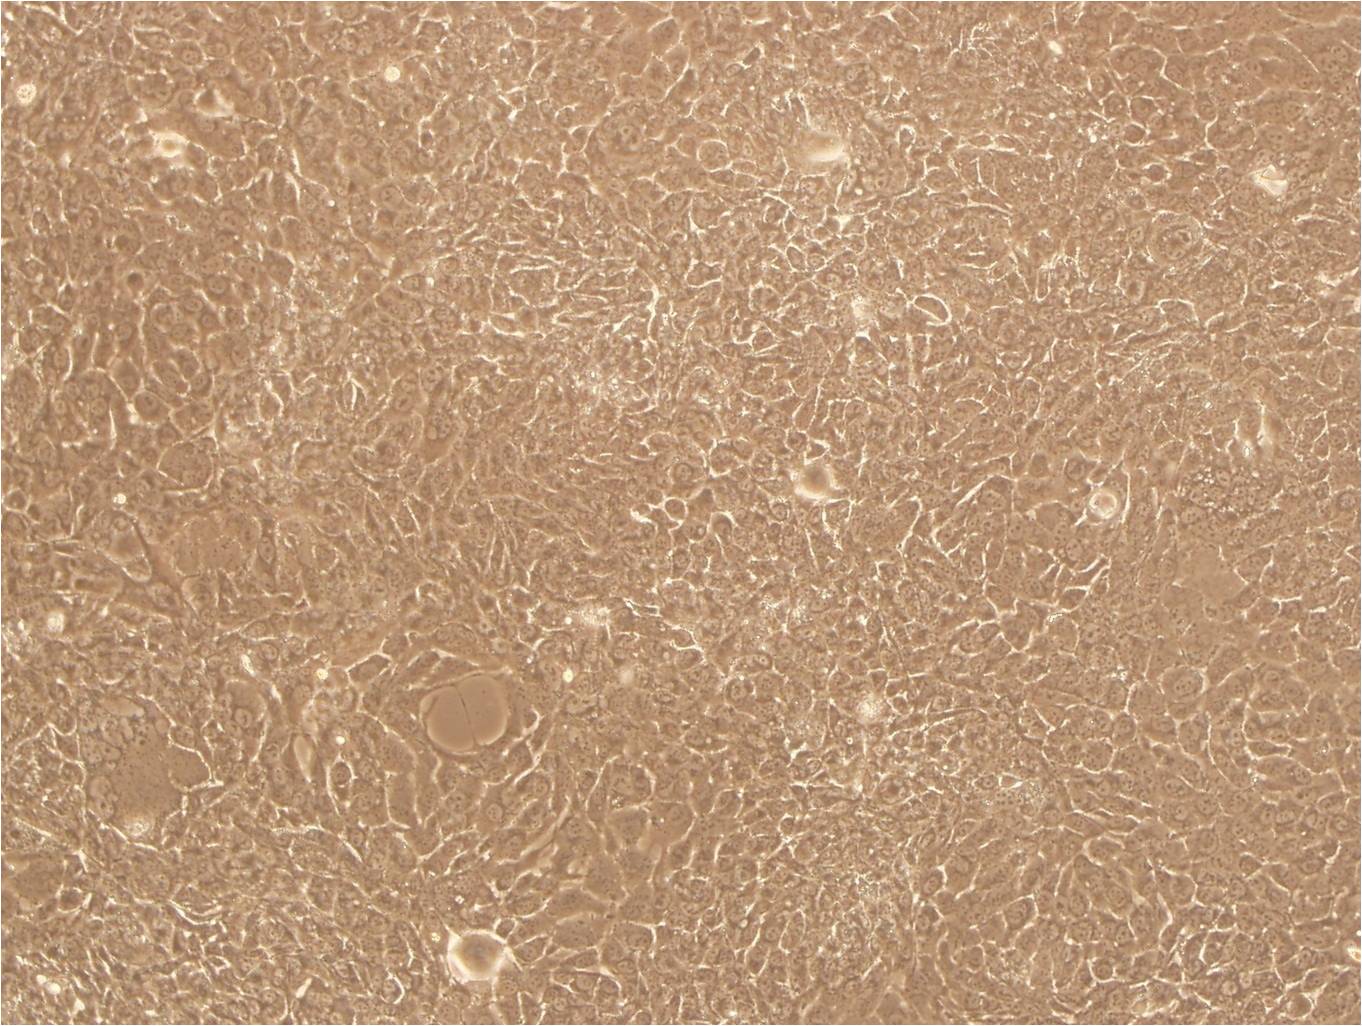 TE4 Cells(赠送Str鉴定报告)|小鼠B淋巴细胞